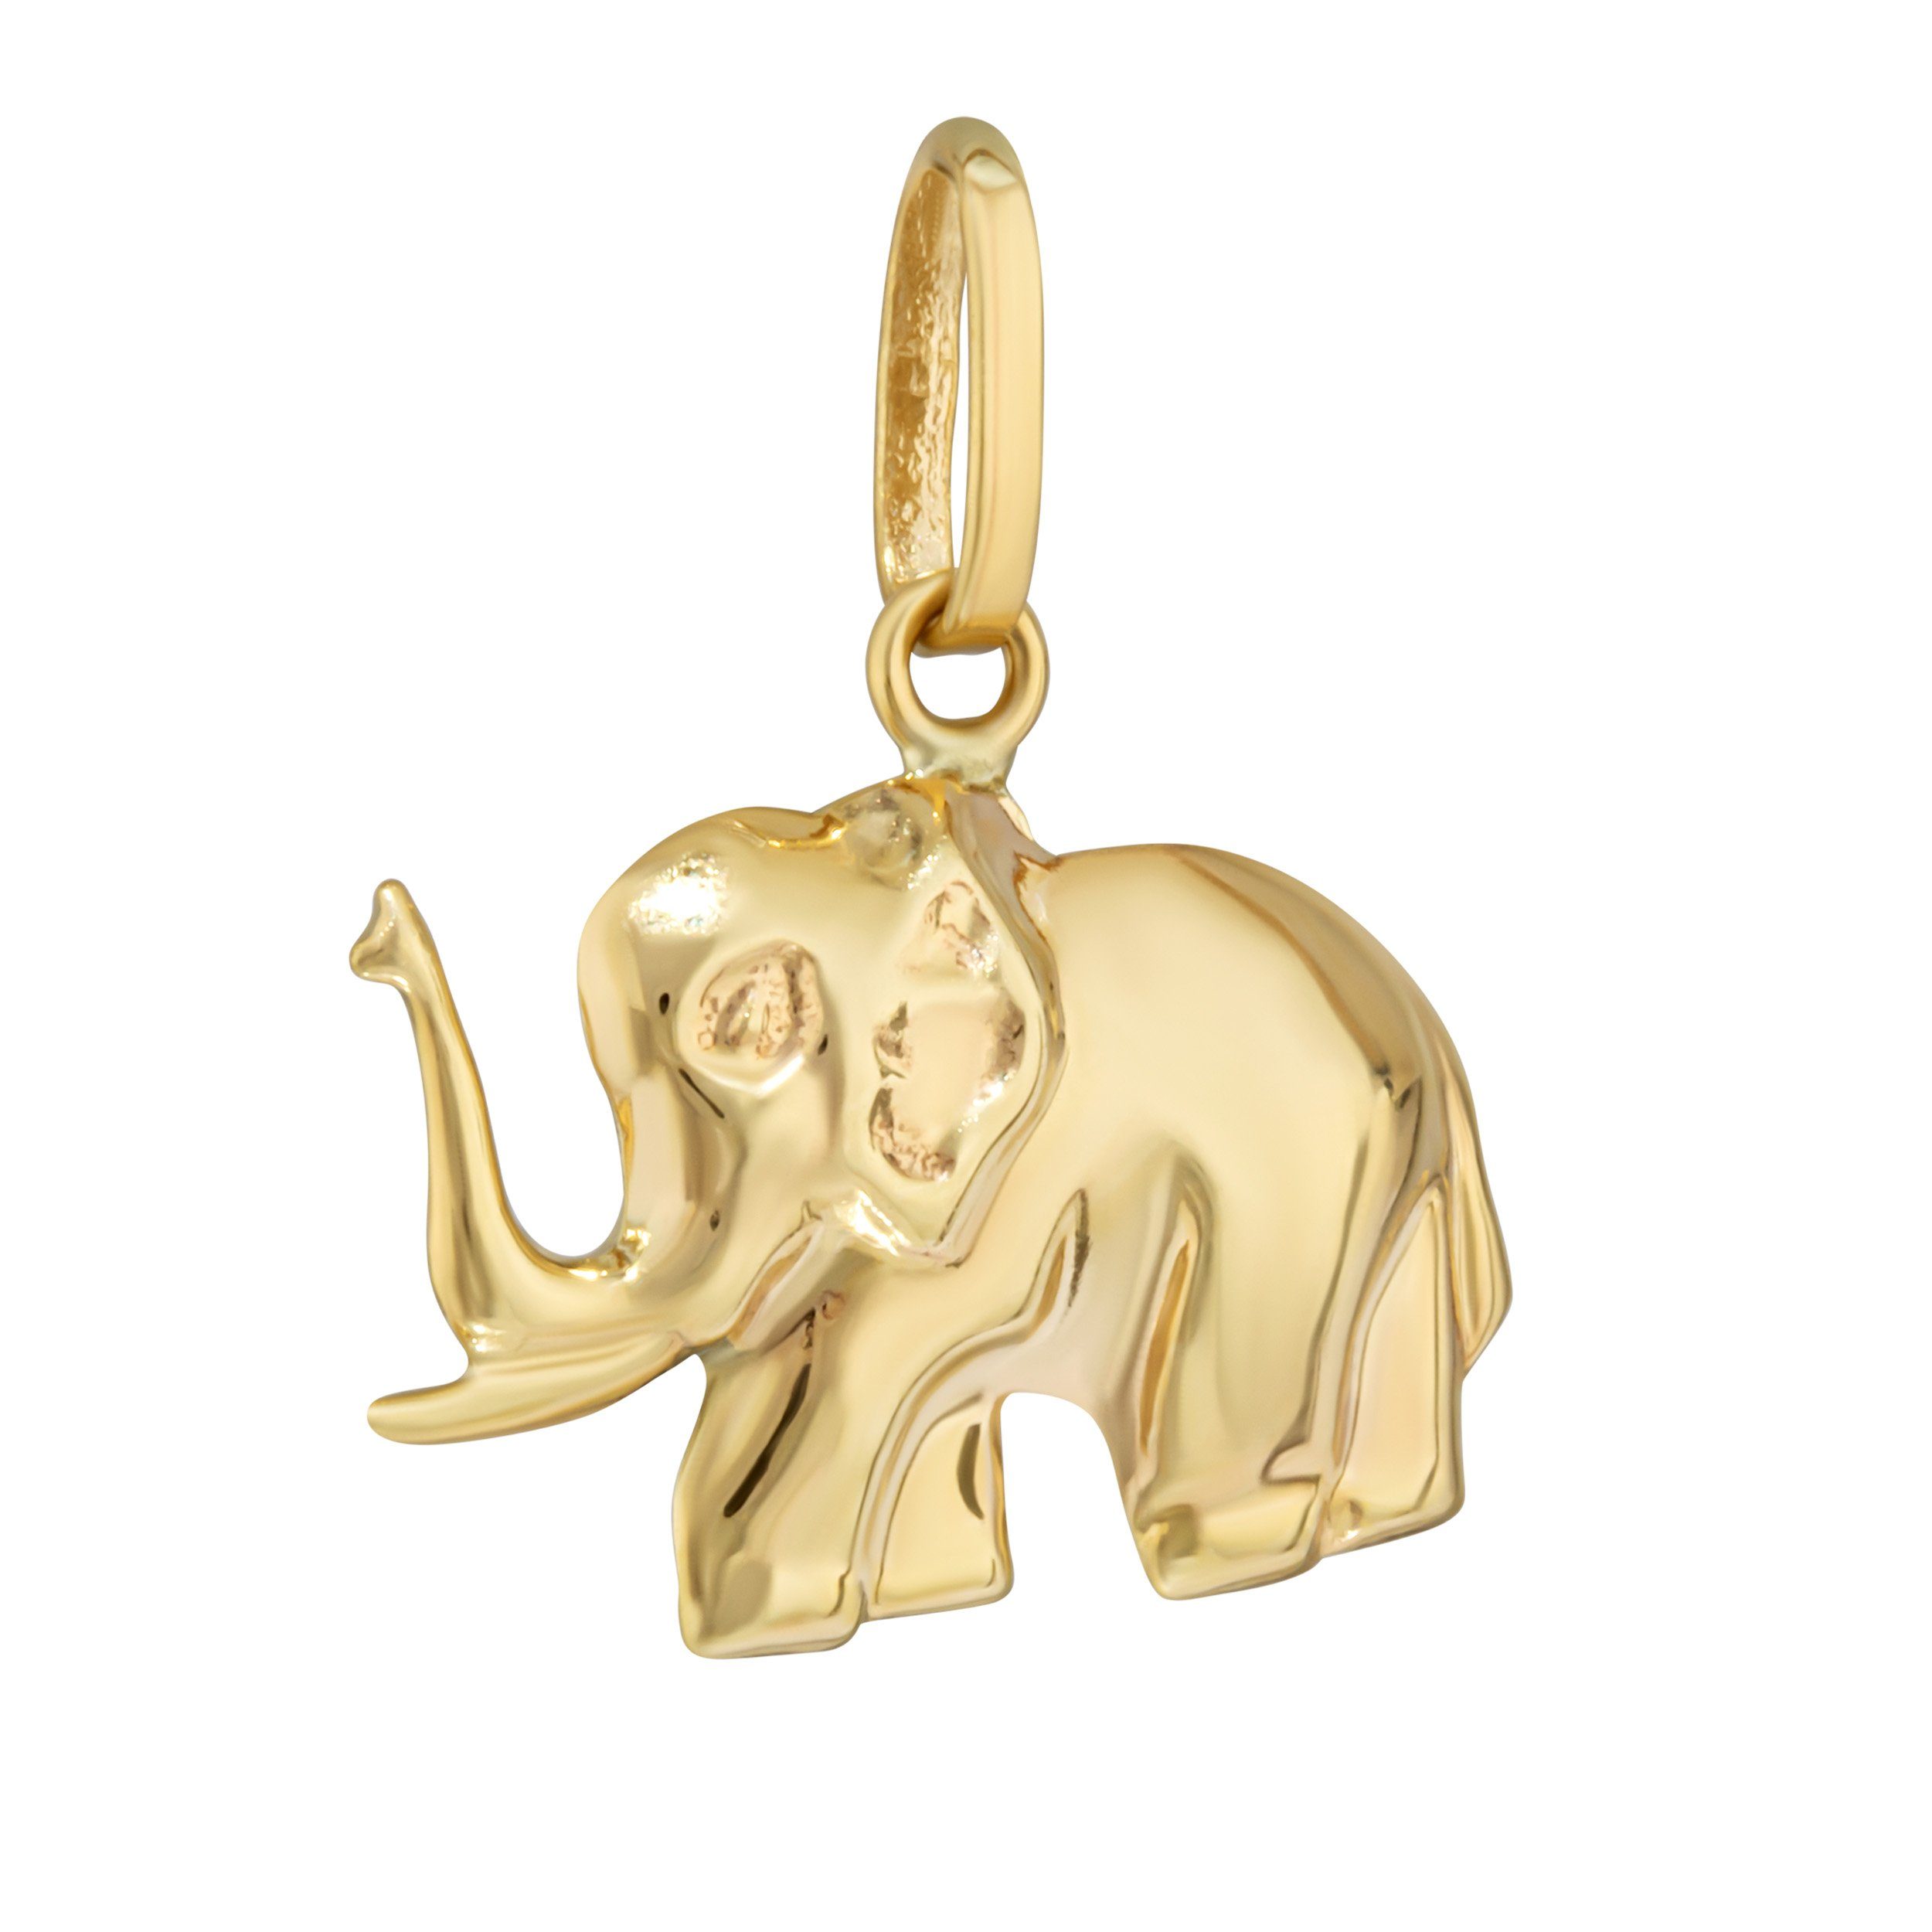 NKlaus Kettenanhänger Kettenanhänger Elefant 333 Gelb gold 8 Karat 16x12mm Talisman Amulett